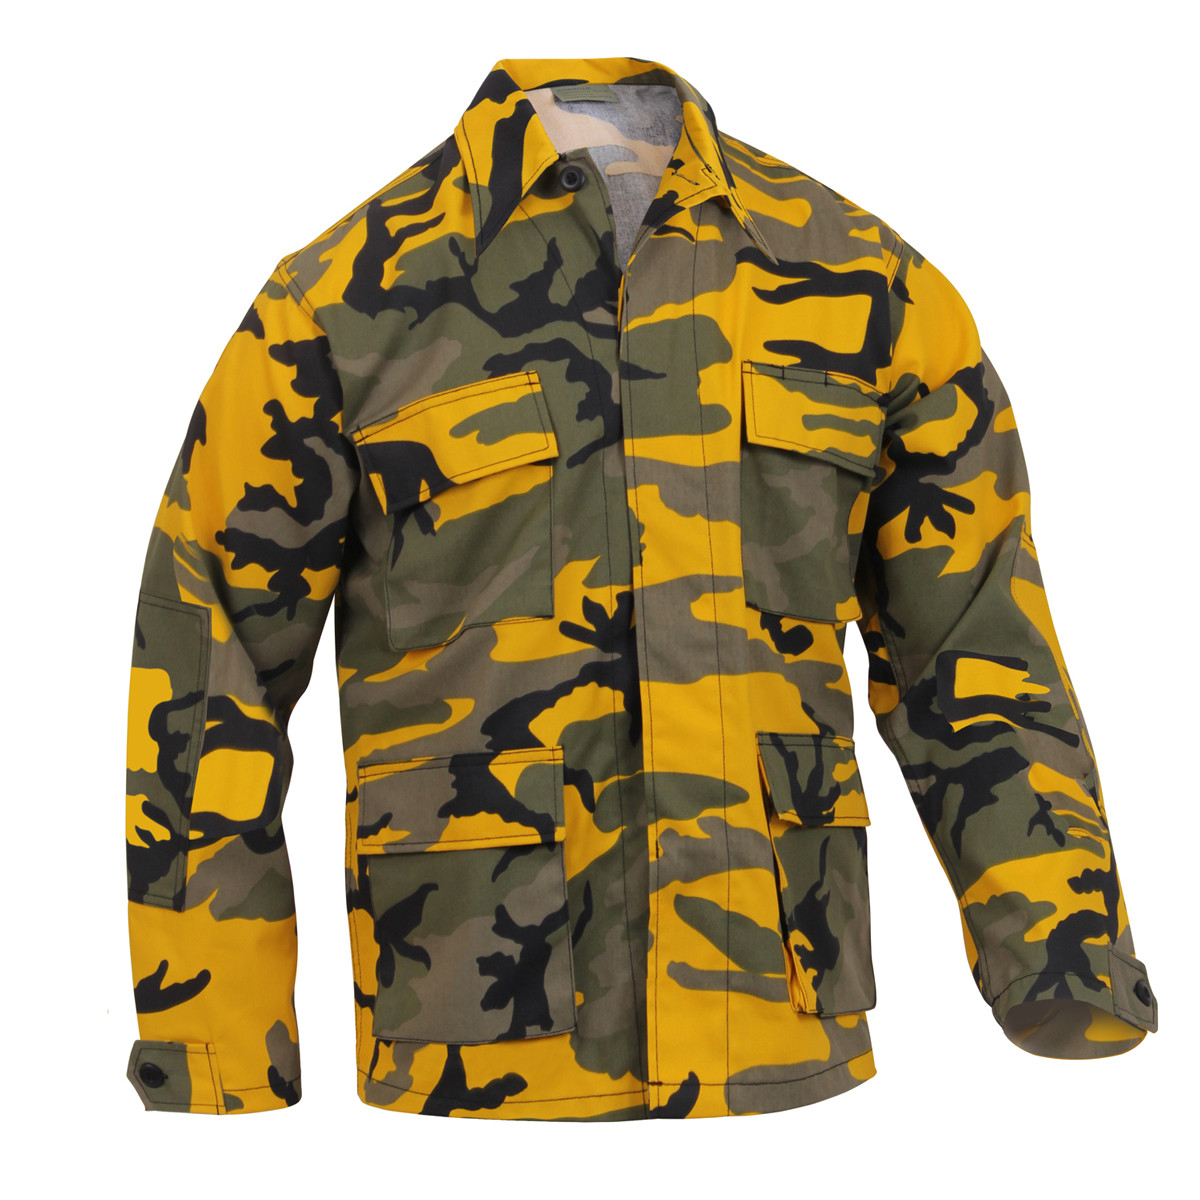 Shop Yellow Camo BDU Shirts - Fatigues Army Navy Gear